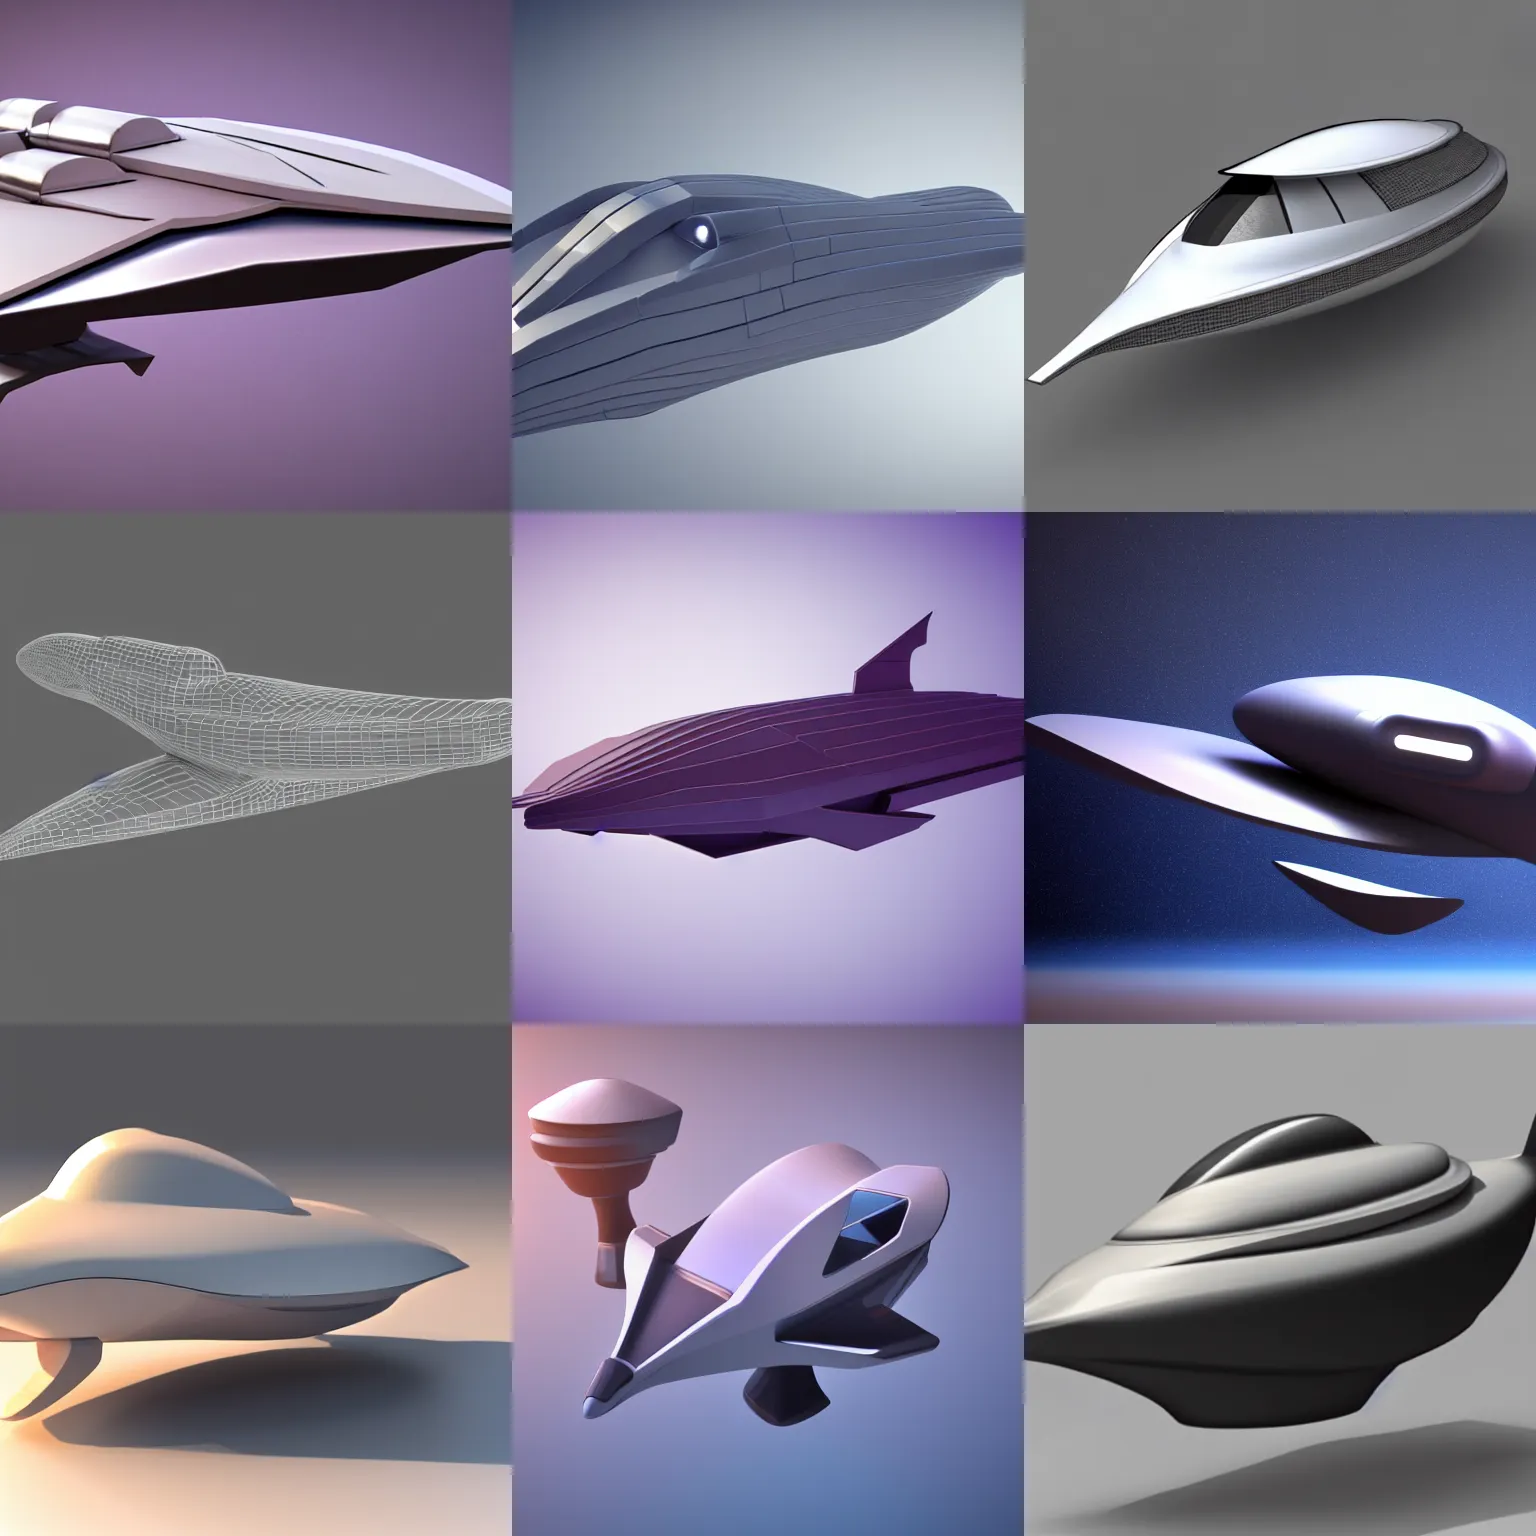 Prompt: Duck shaped spaceship, elegant, futuristic, 3d render